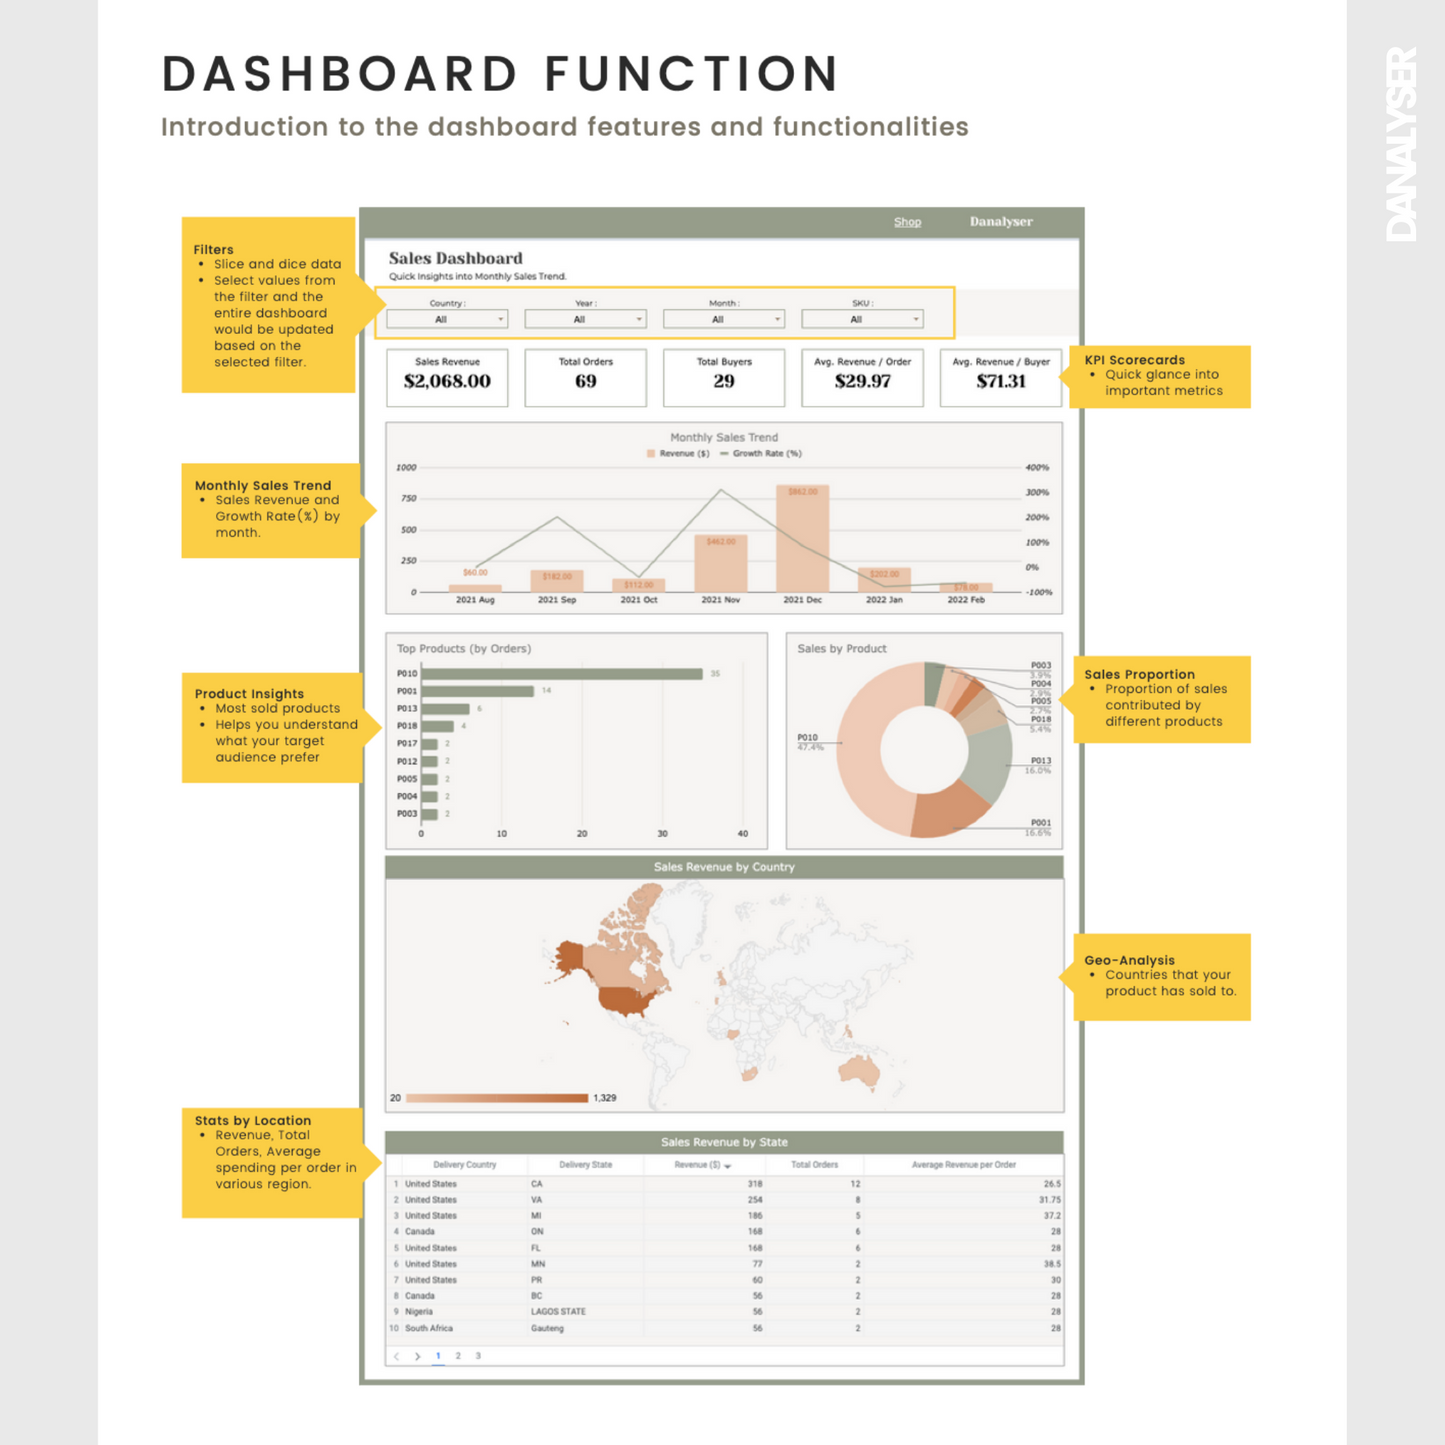 Etsy Analytics Dashboard